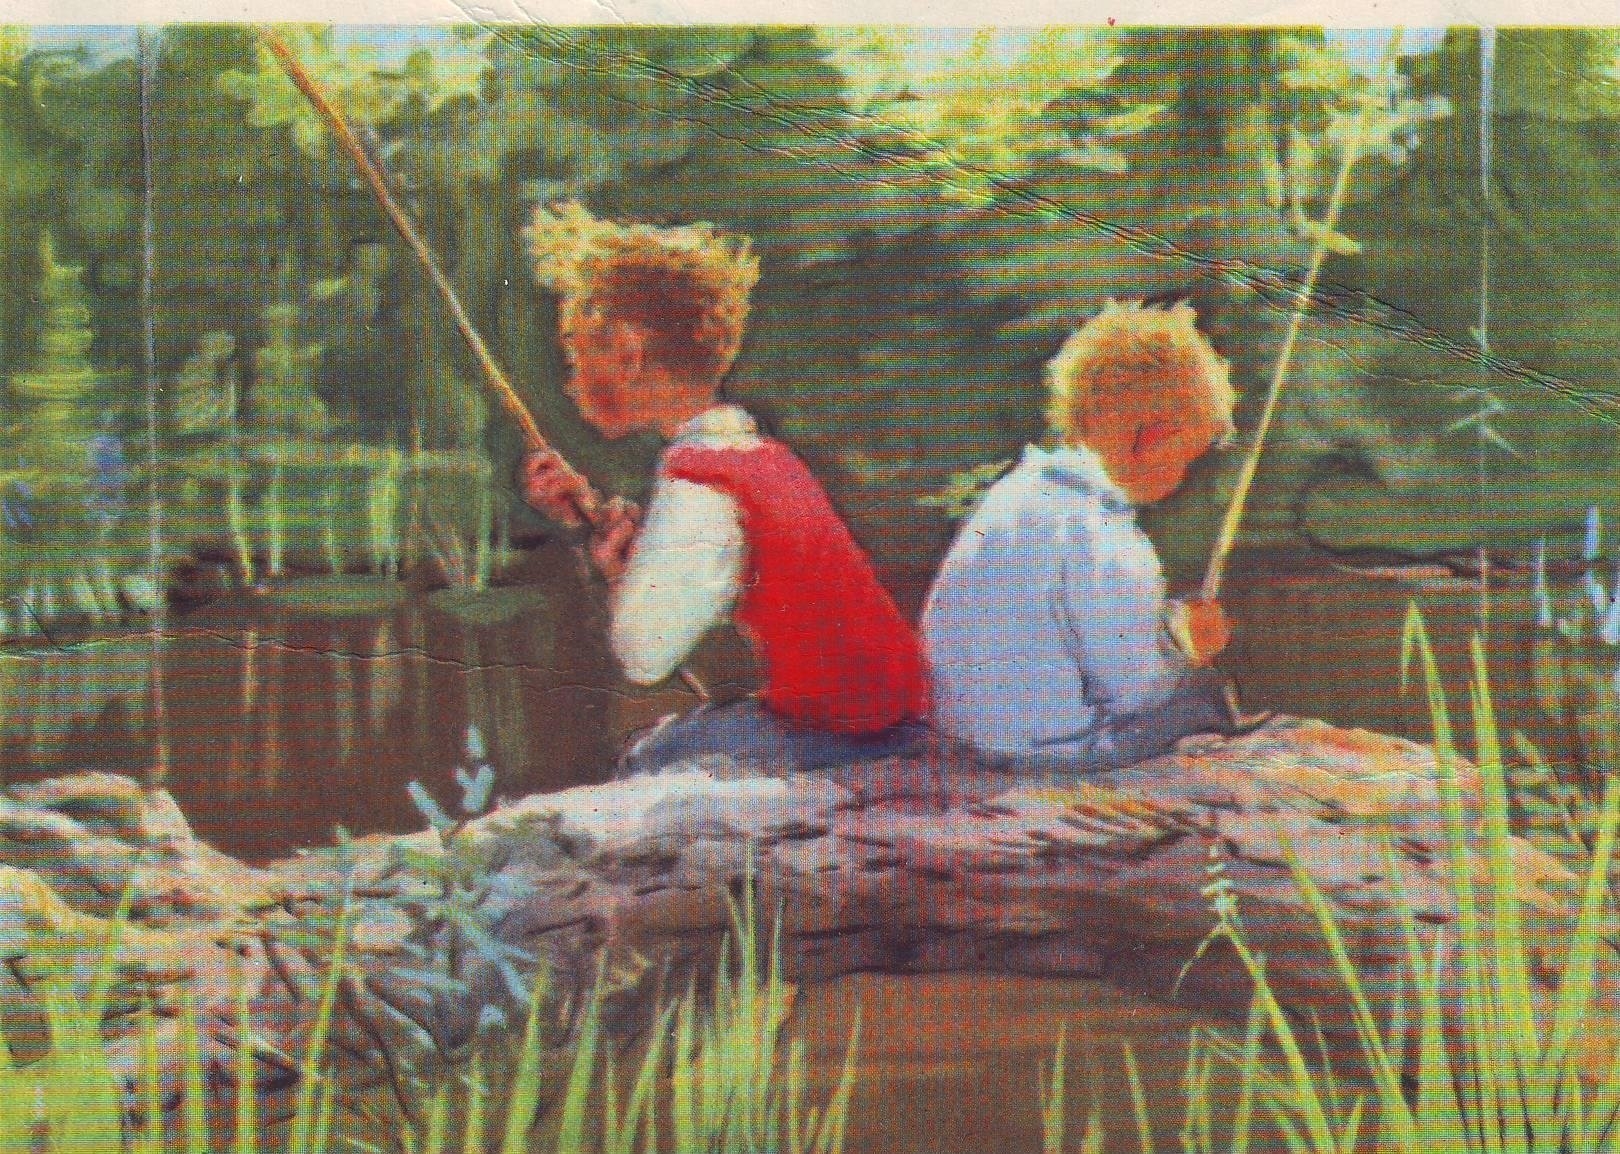 Мальчики на рыбалке. Мальчишки на рыбалке. Дети на рыбалке. Рыболовы в живописи. Дети рыбачат картина.